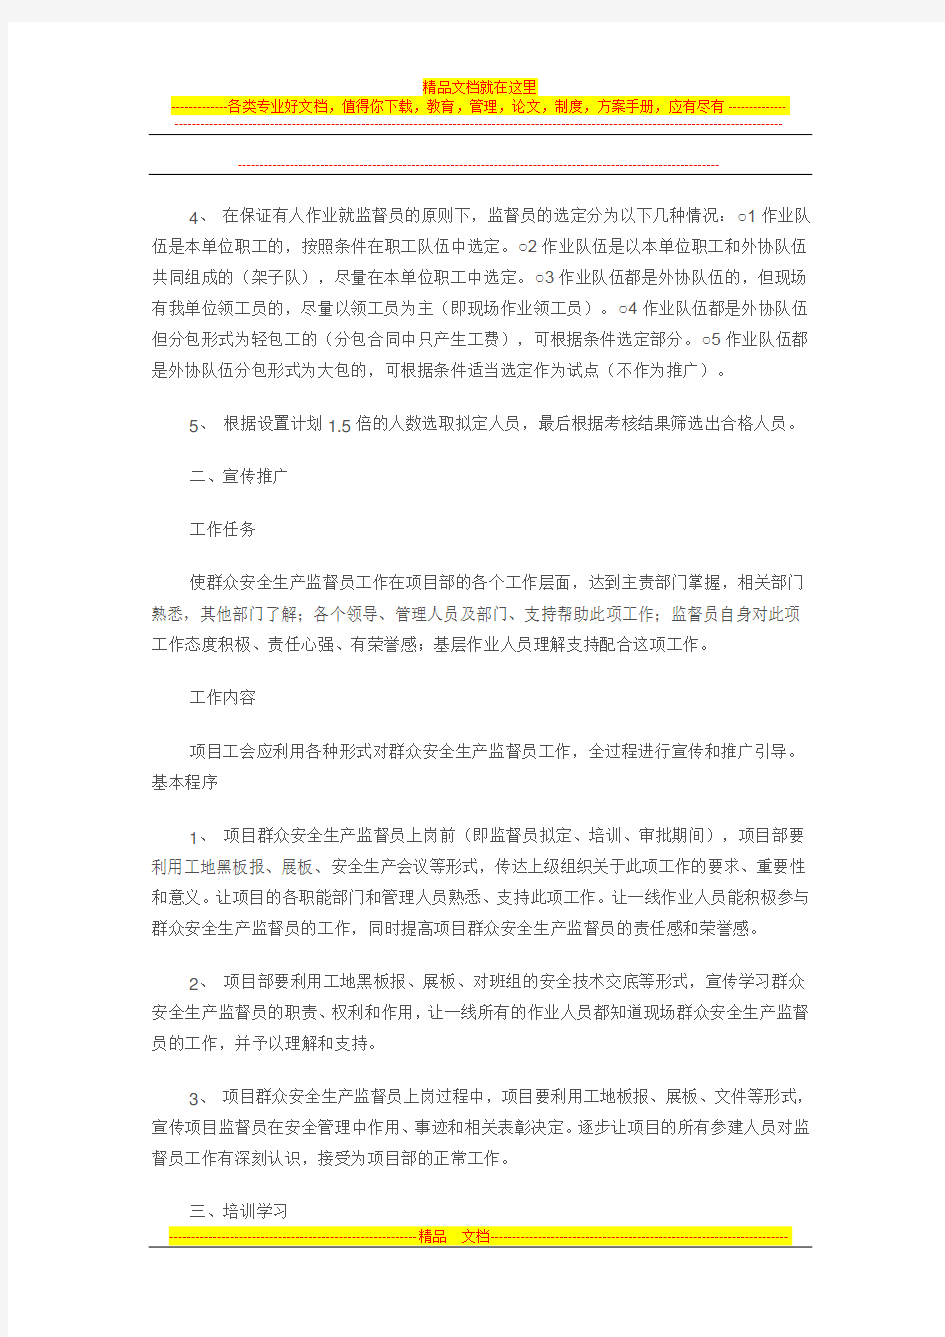 中国中铁一局集团有限公司工会群众安全生产监督员工作手册